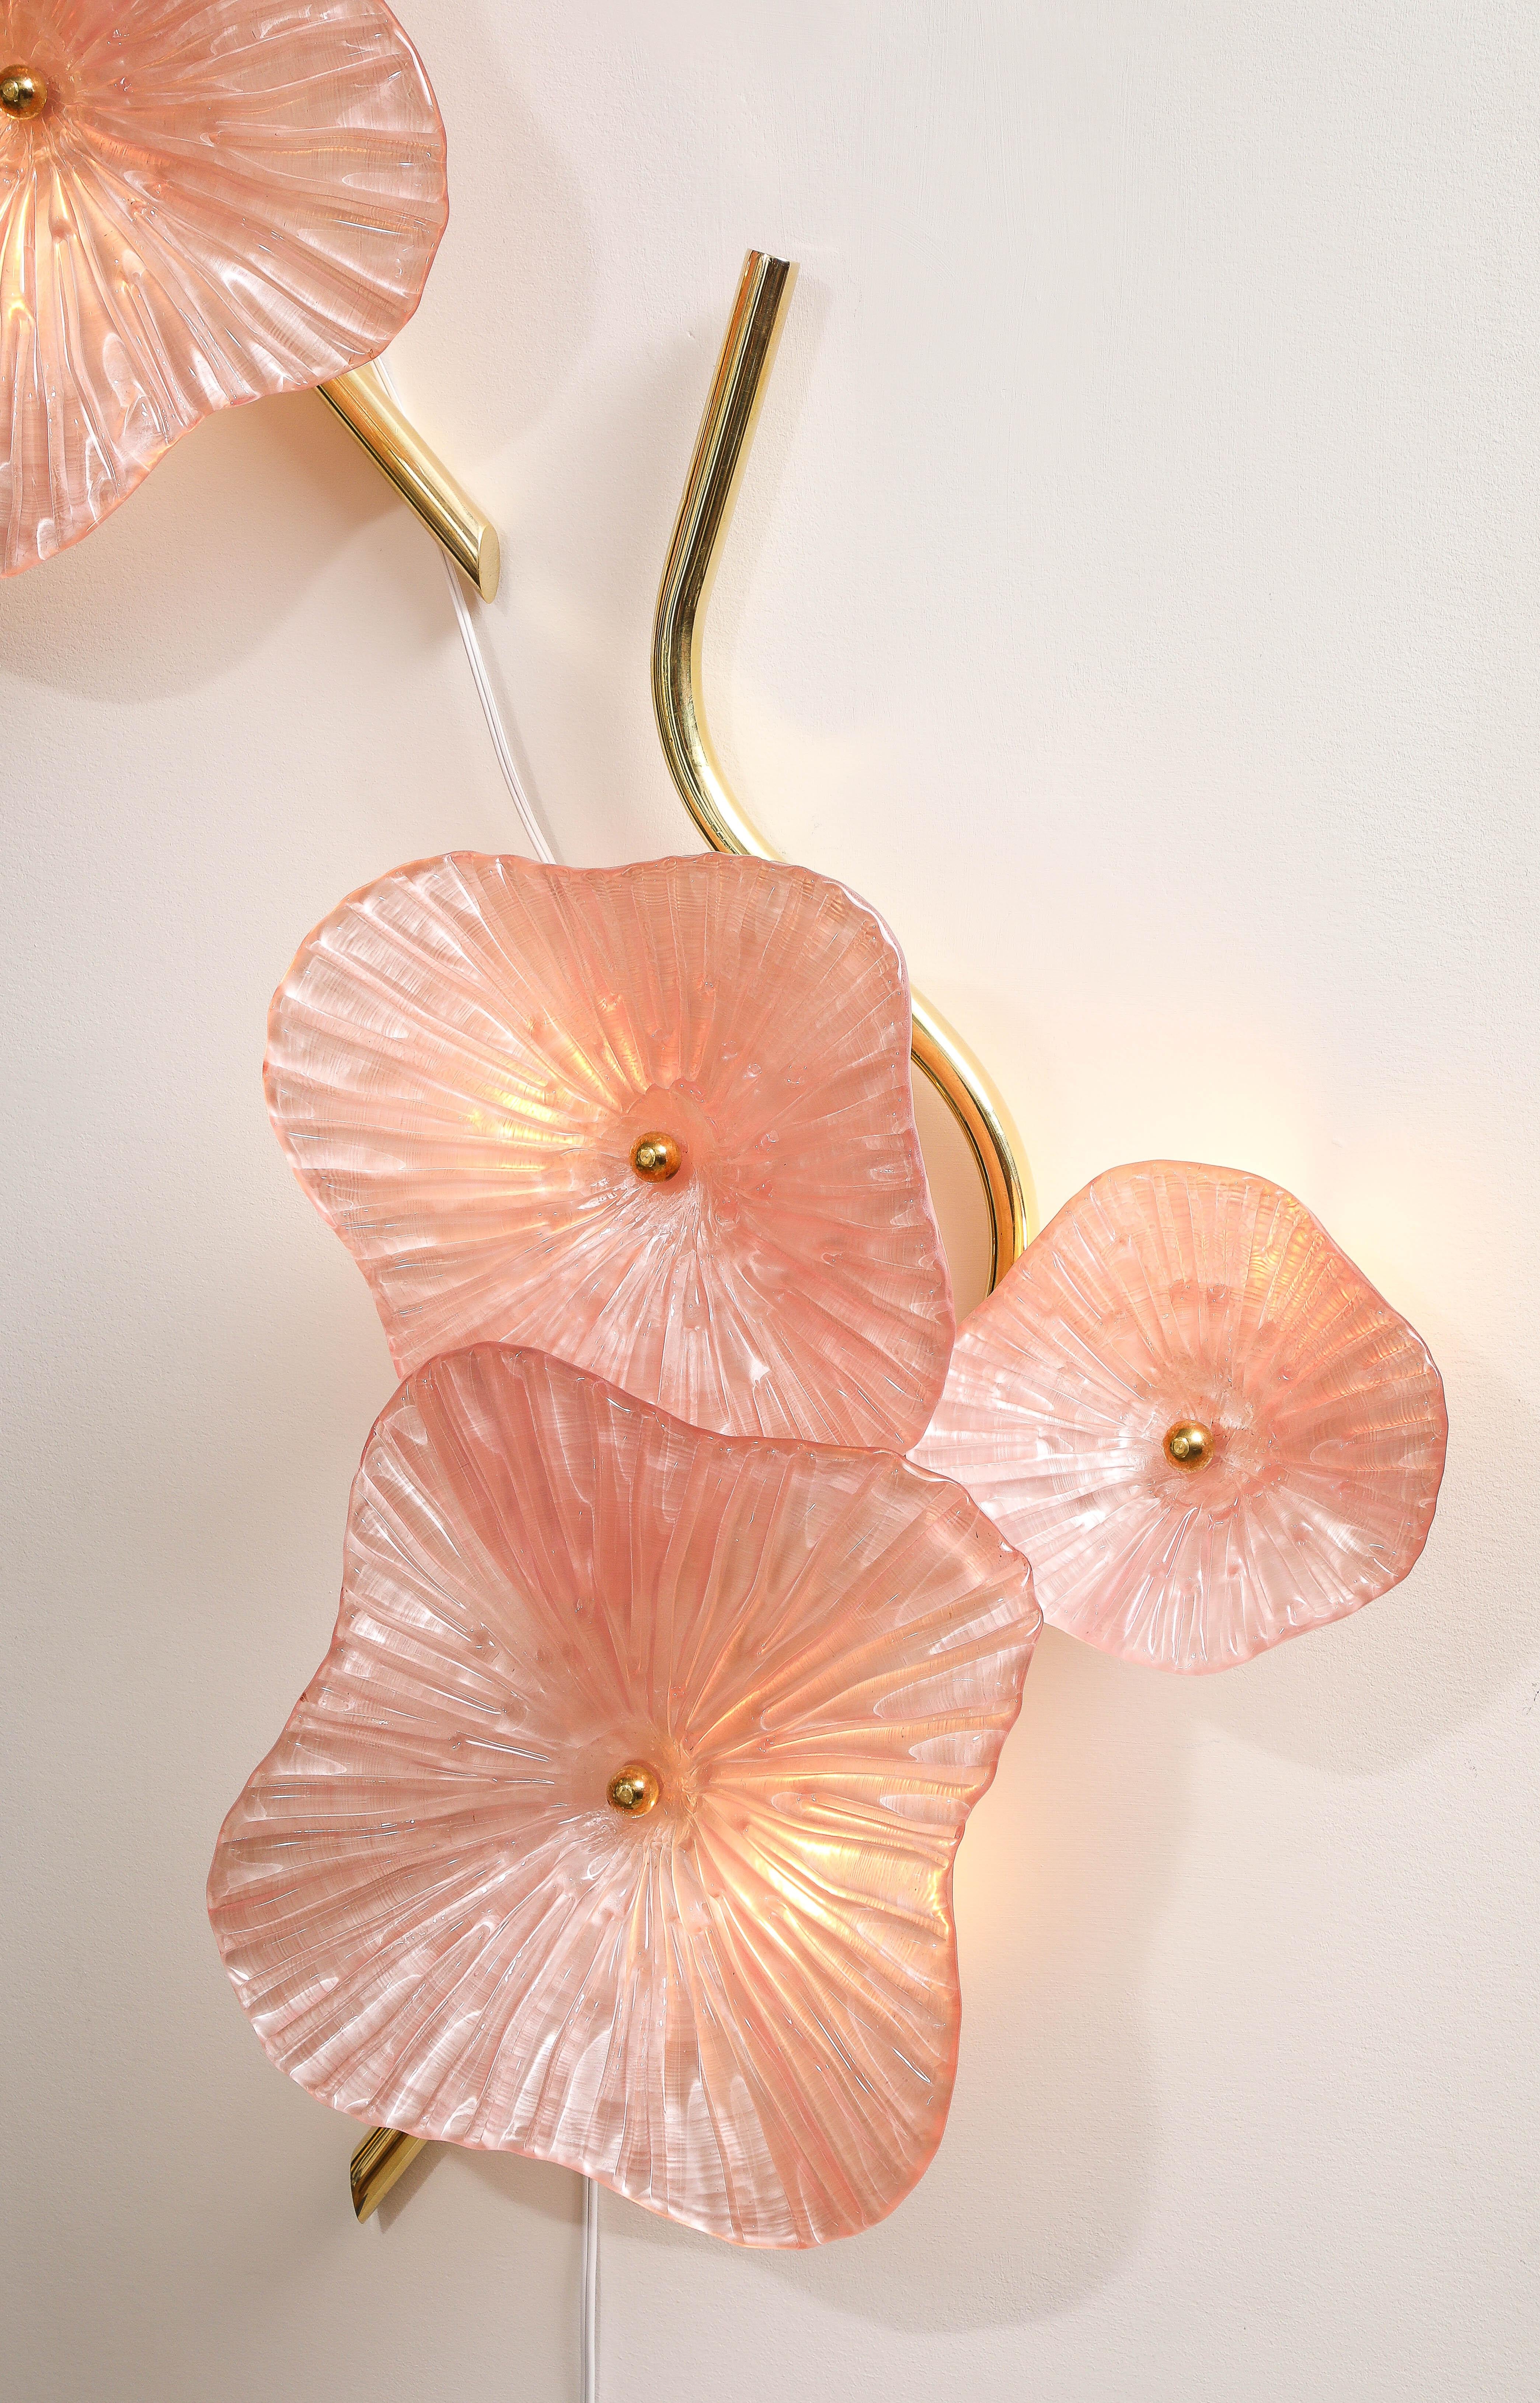 Pair of Blush Pink Murano Glas Blume Wandleuchte oder Wandkunst mit Messingrahmen. Handgegossene und geformte Murano-Glasblumen in rosa Farbe sind mit einer Messingkappe an Messingstielen befestigt. Die Murano-Glasblumen variieren in ihrer Größe und